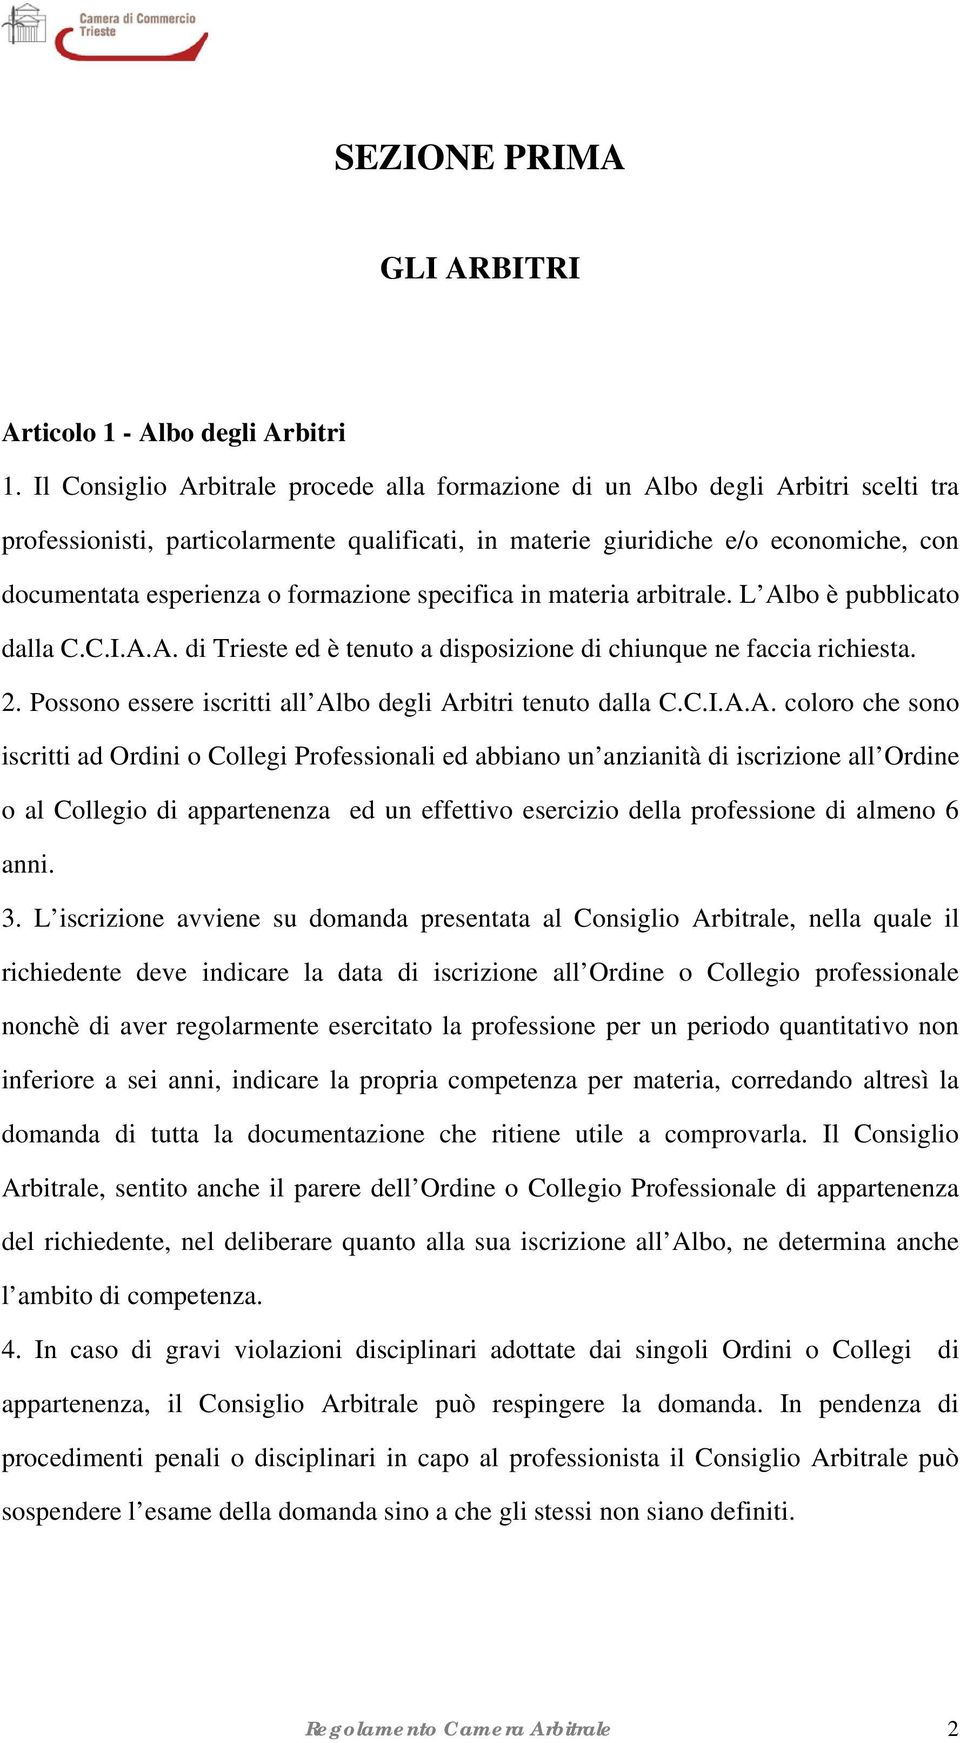 formazione specifica in materia arbitrale. L Albo è pubblicato dalla C.C.I.A.A. di Trieste ed è tenuto a disposizione di chiunque ne faccia richiesta. 2.